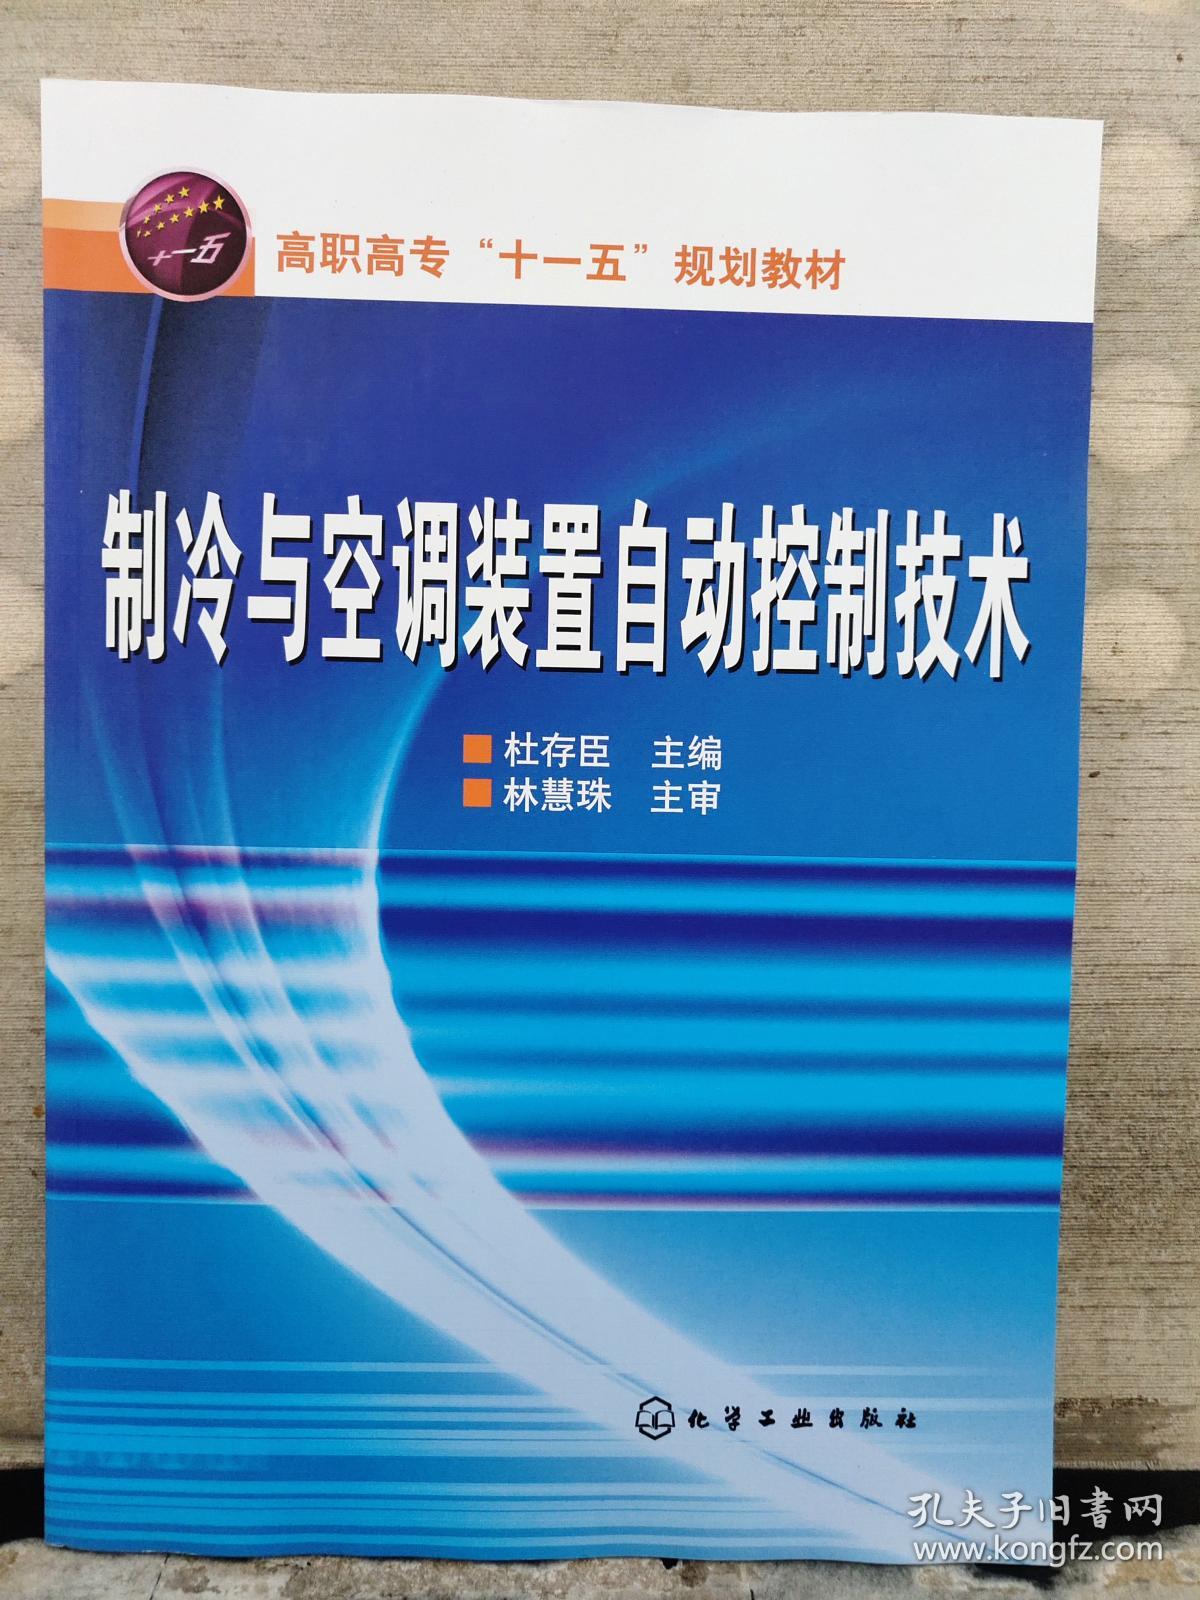 制冷与空调装置自动控制技术（2019年出版）